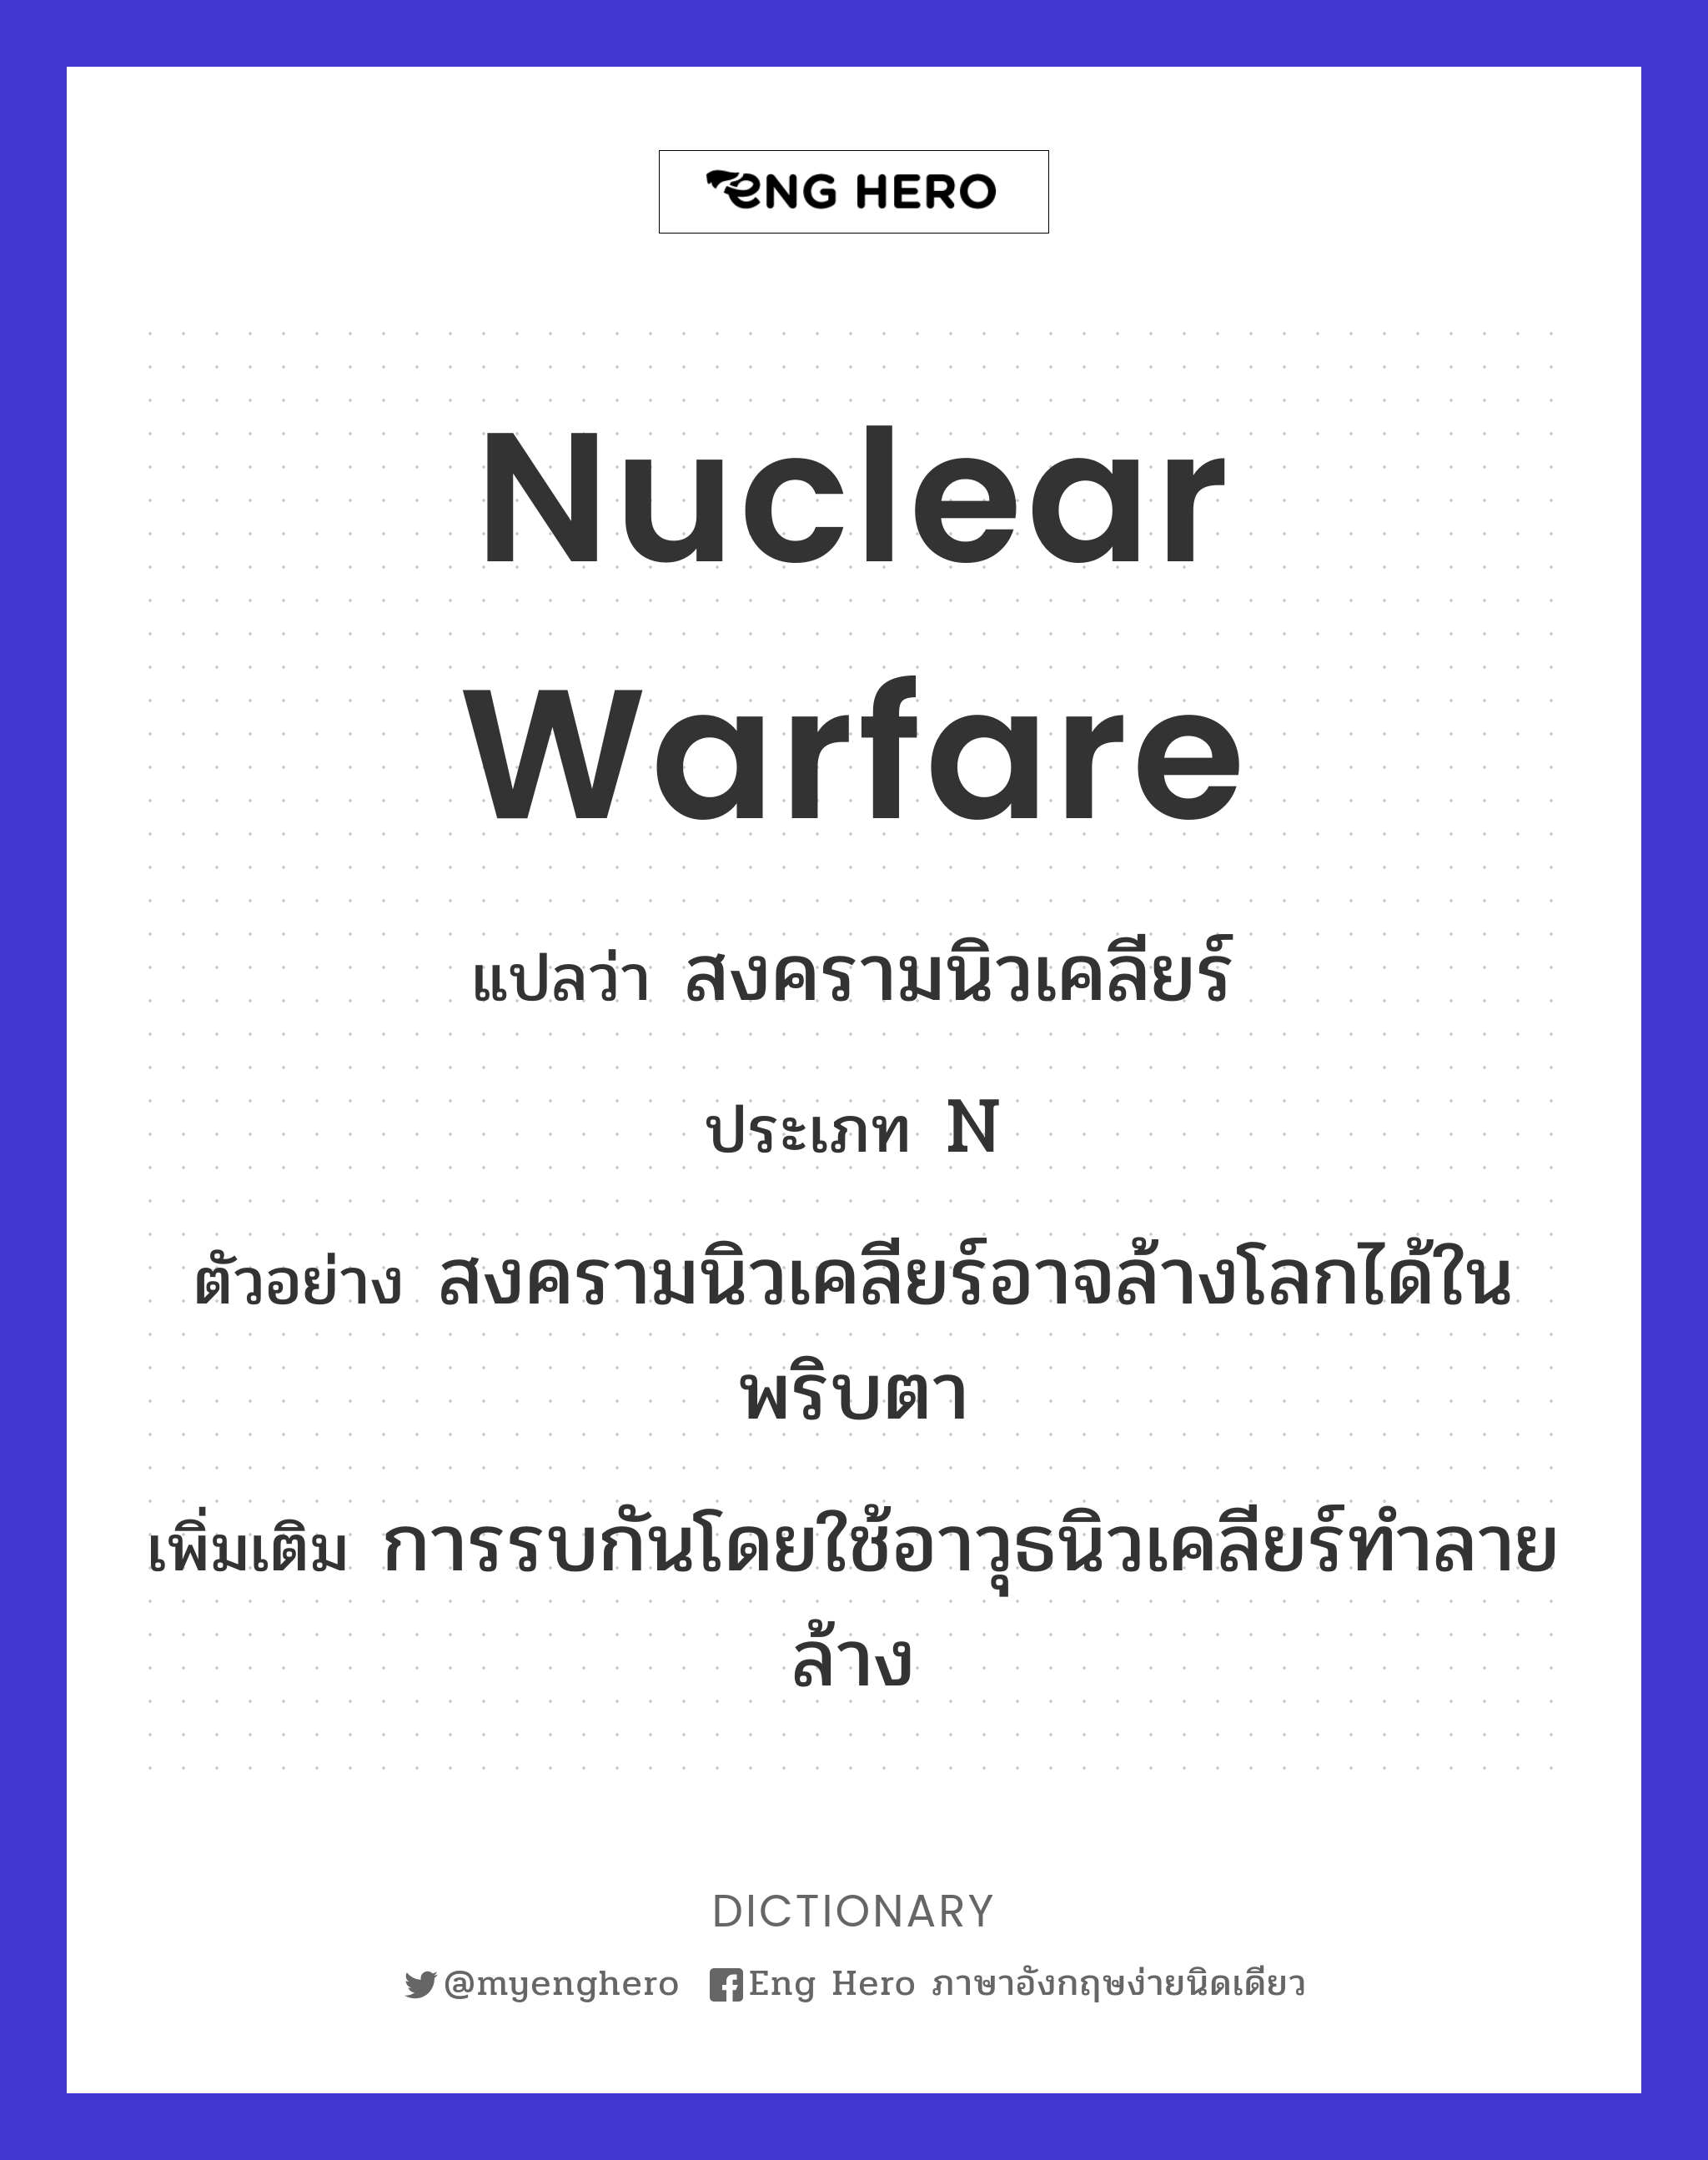 nuclear warfare